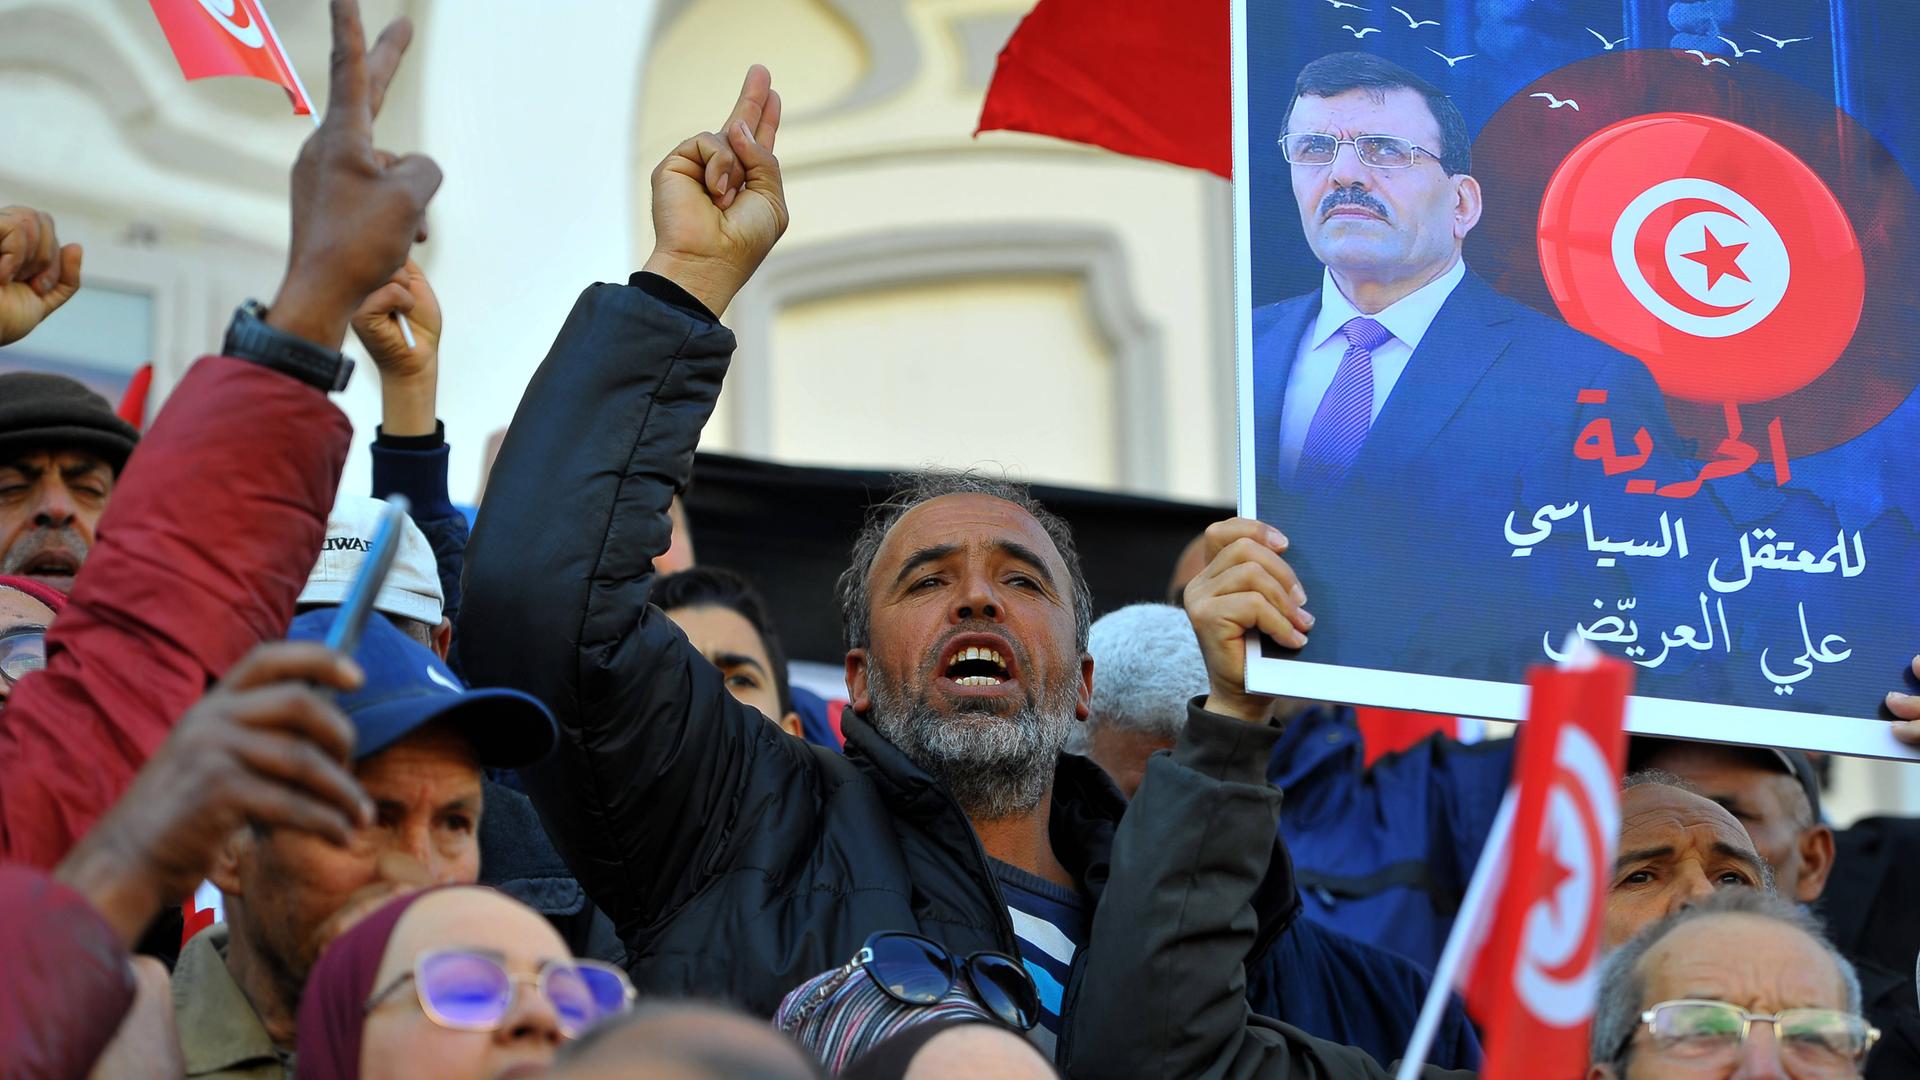 Antiregierungsproteste in Tunesien: Menschen demonstrieren, skandieren, halten Schilder hoch.